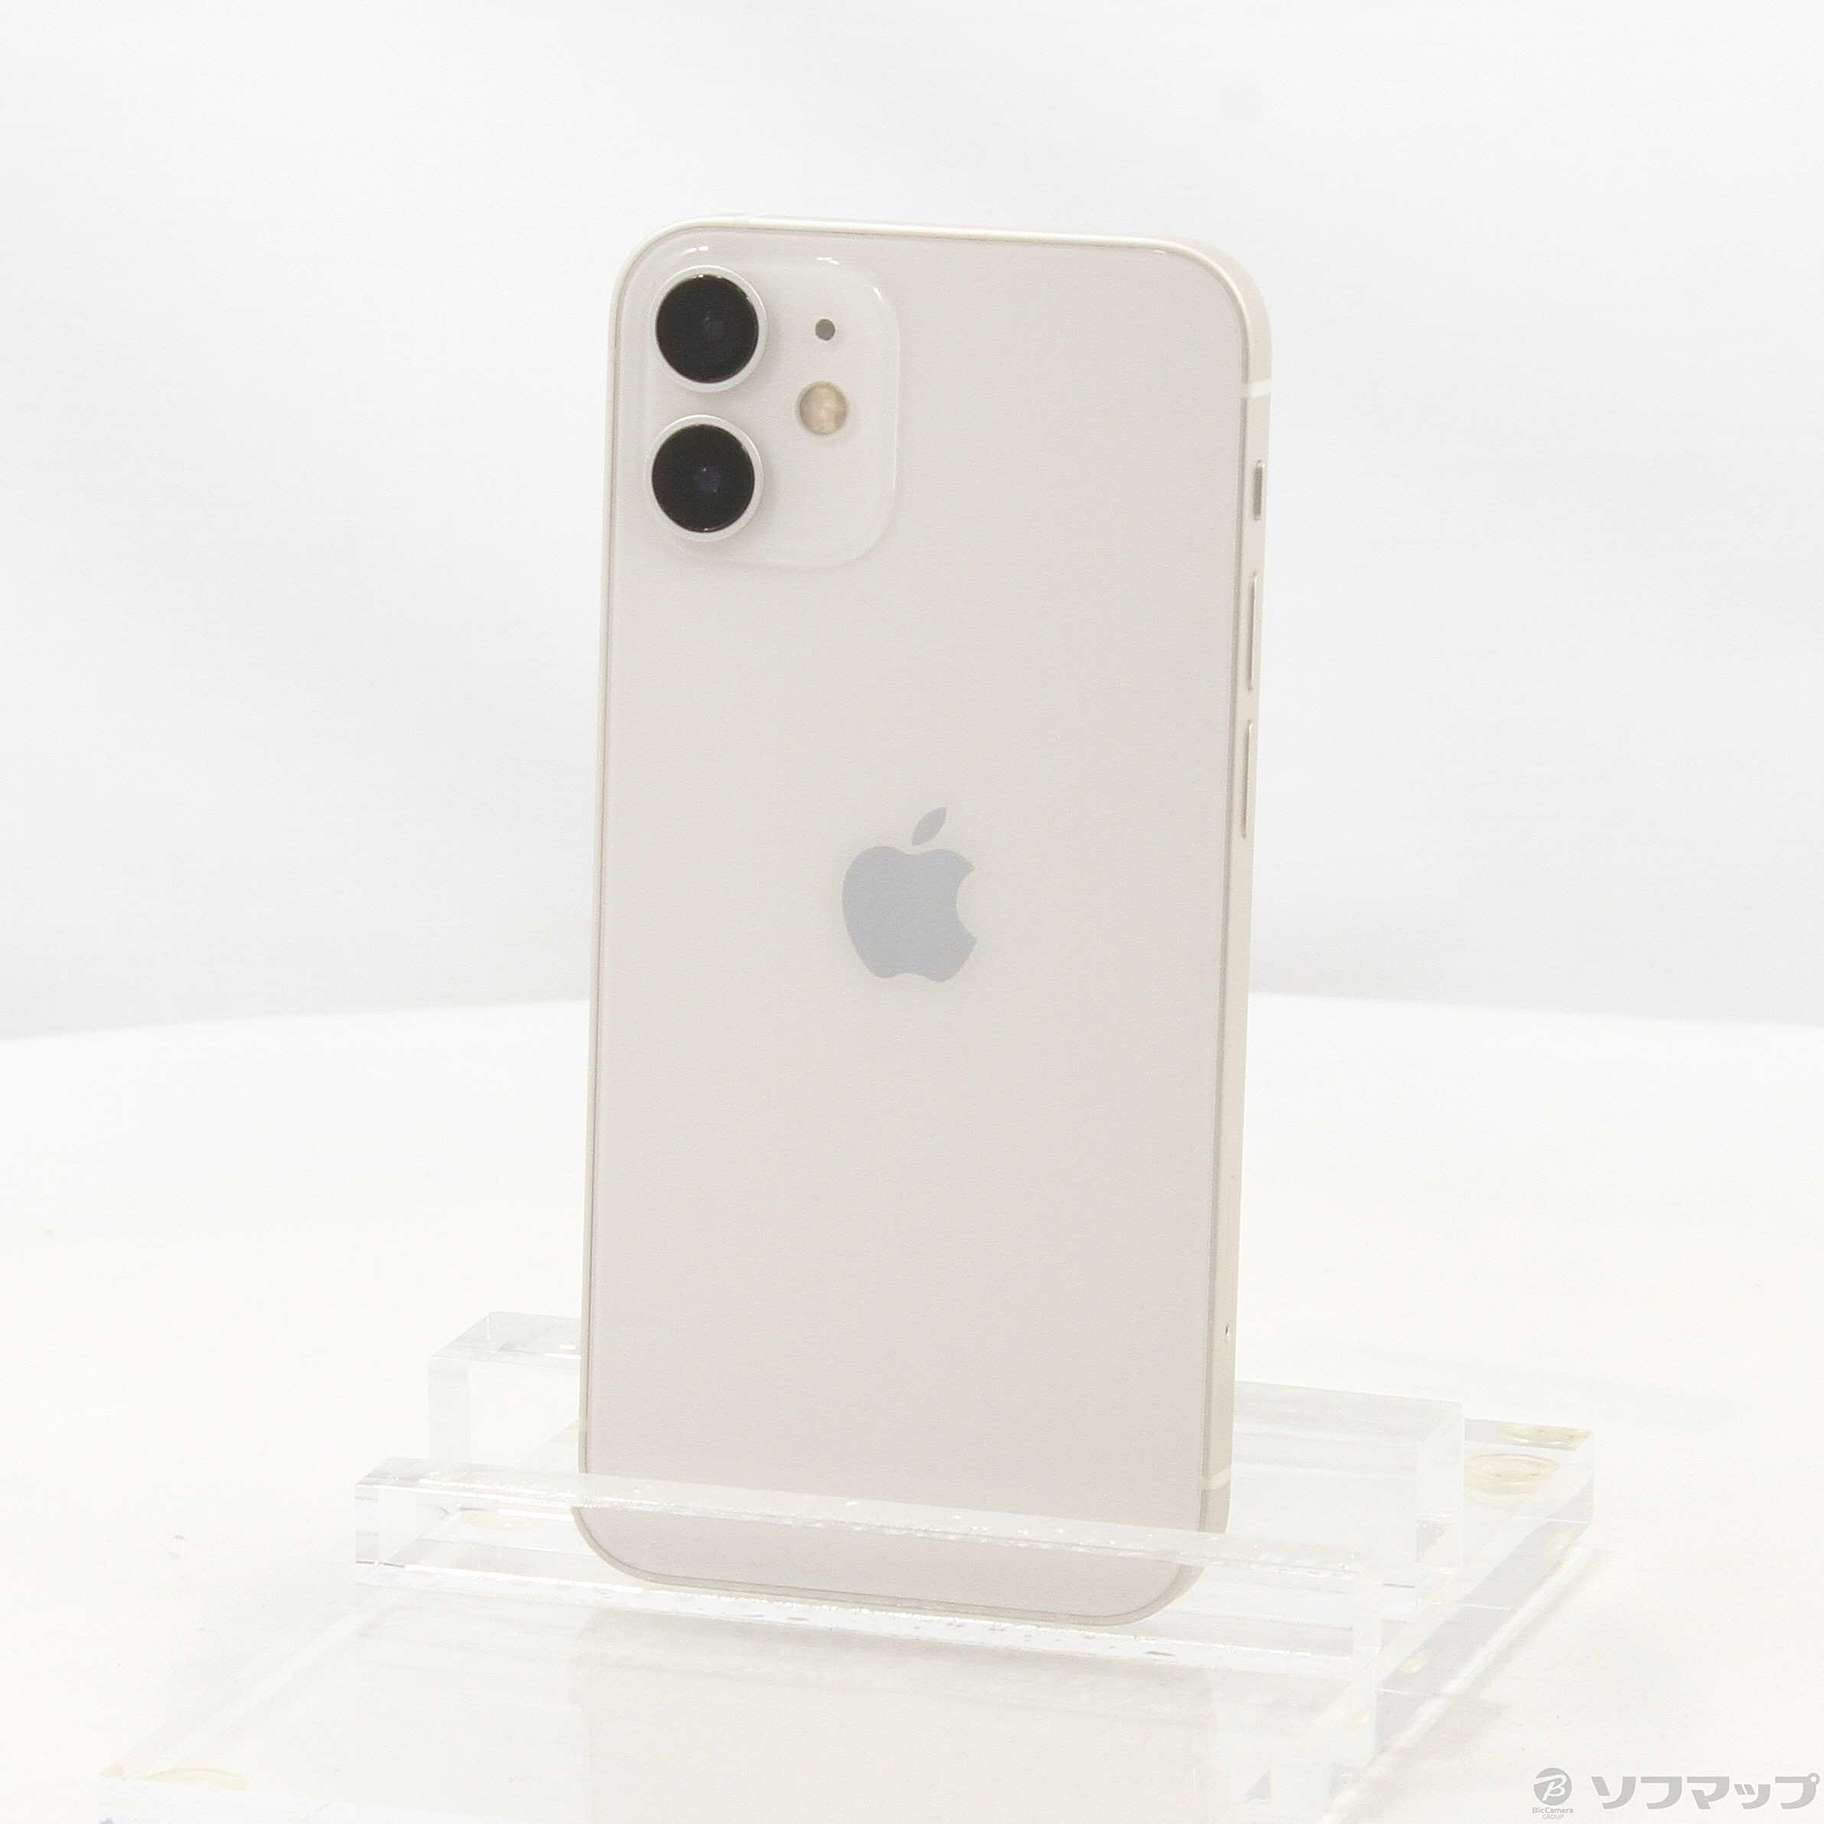 【新品未開封・シュリンク付】iPhone12 mini 64G White